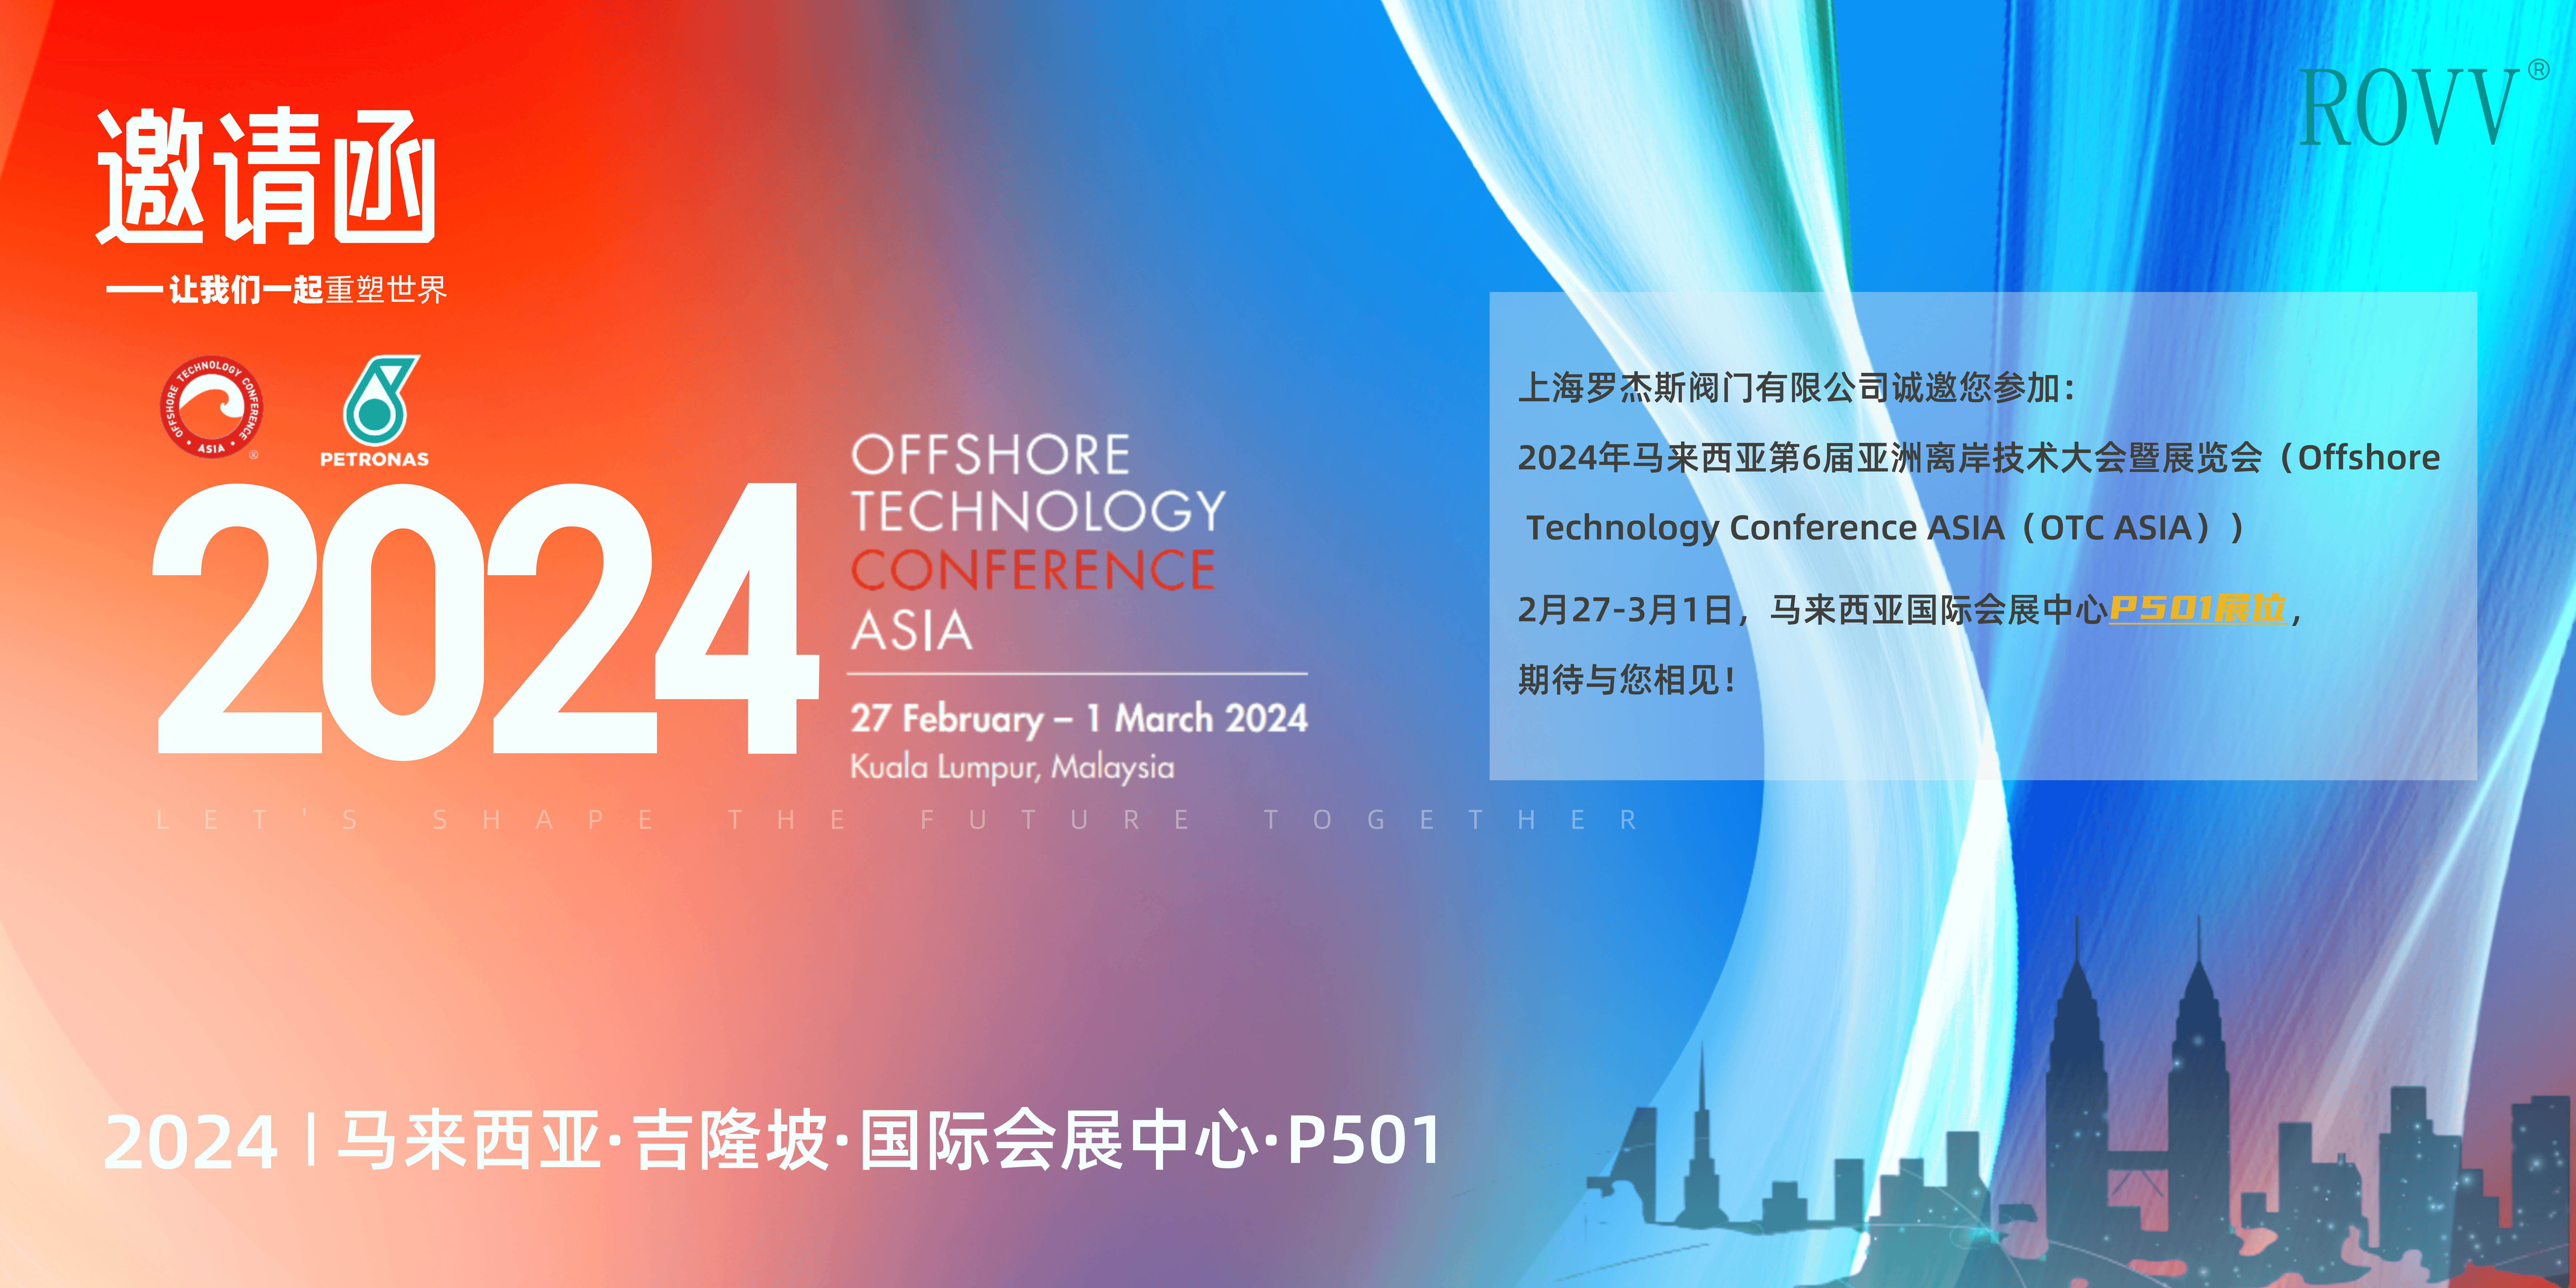 上海罗杰斯阀门有限公司携明星产品亮相第6届亚洲离岸技术大会暨展览会